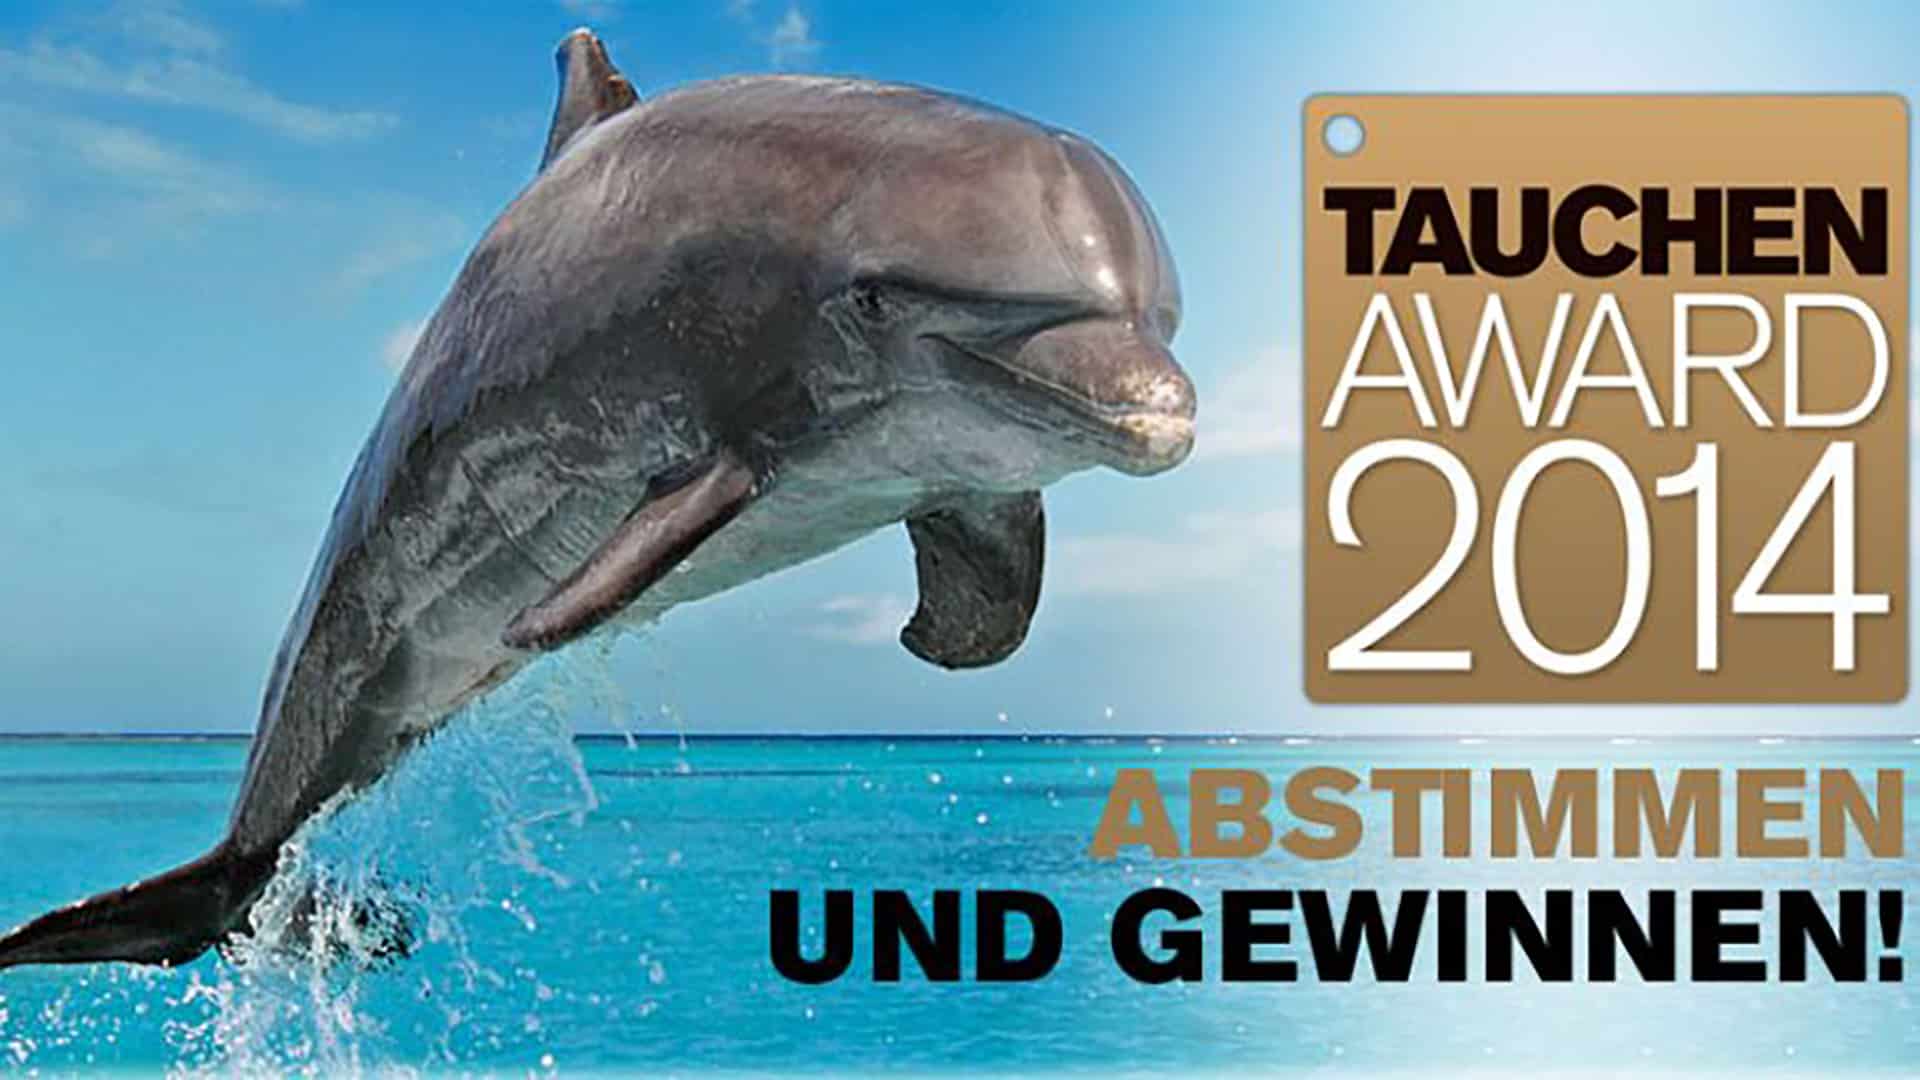 Foto: Tauchen Award 2014, Quelle: Tauchen.de